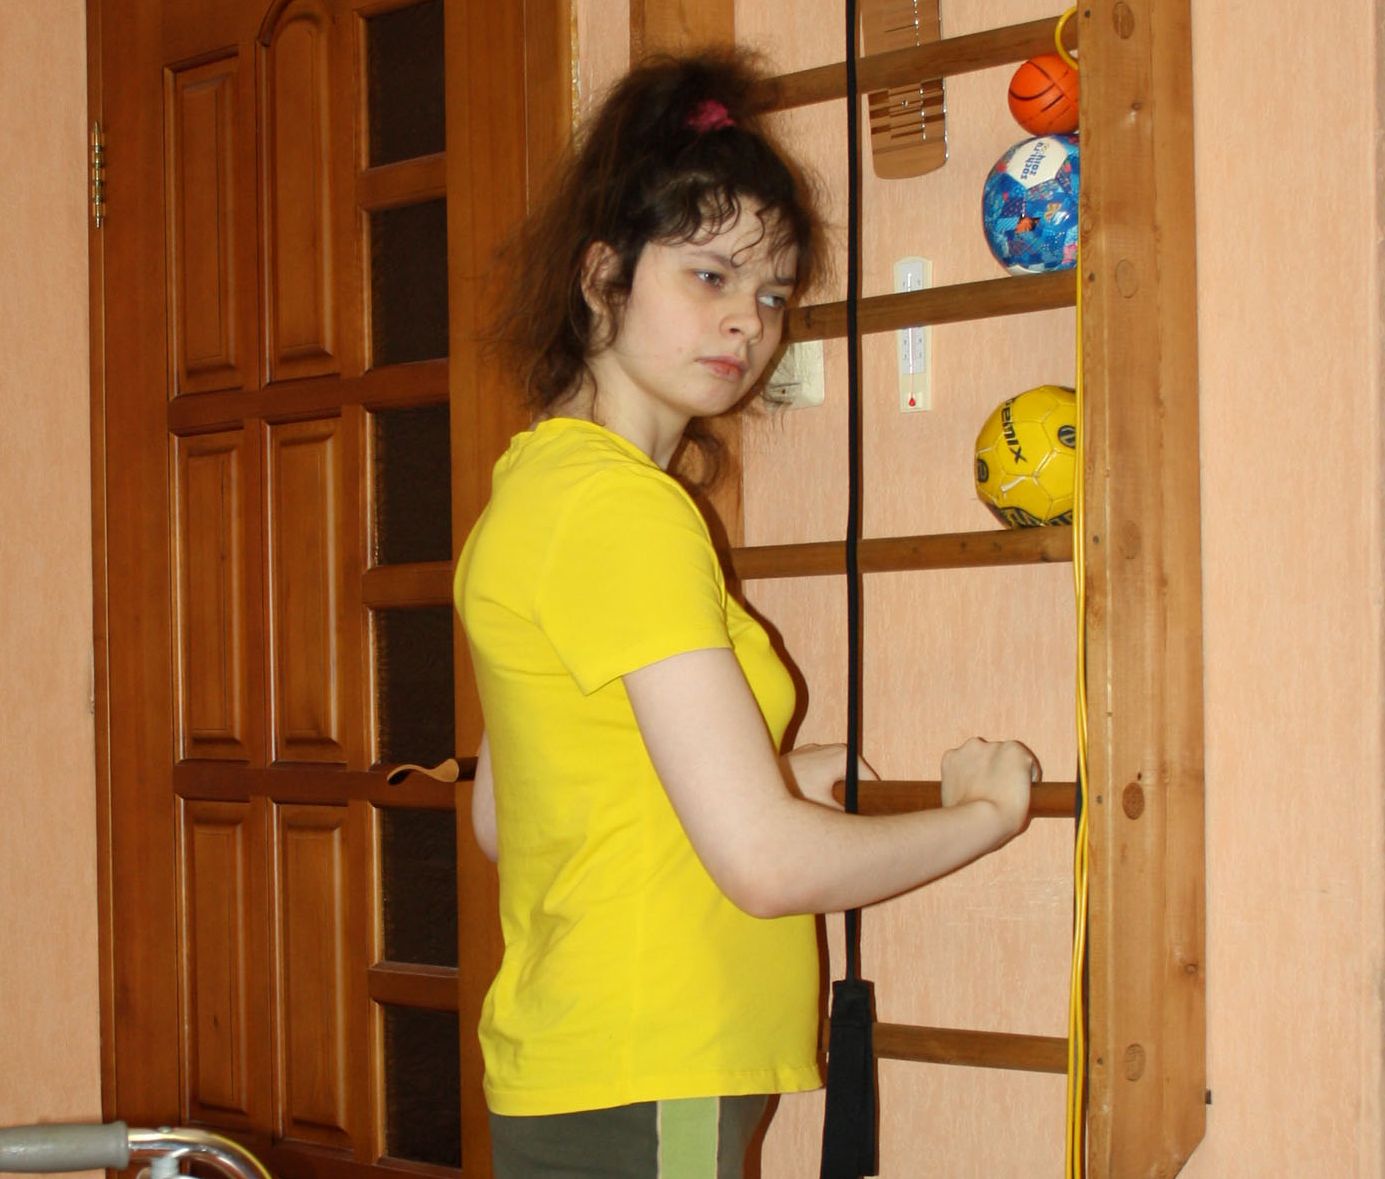 Кристине Пиуто из поселка Усогорск Удорского района требуется помощь благотворителей